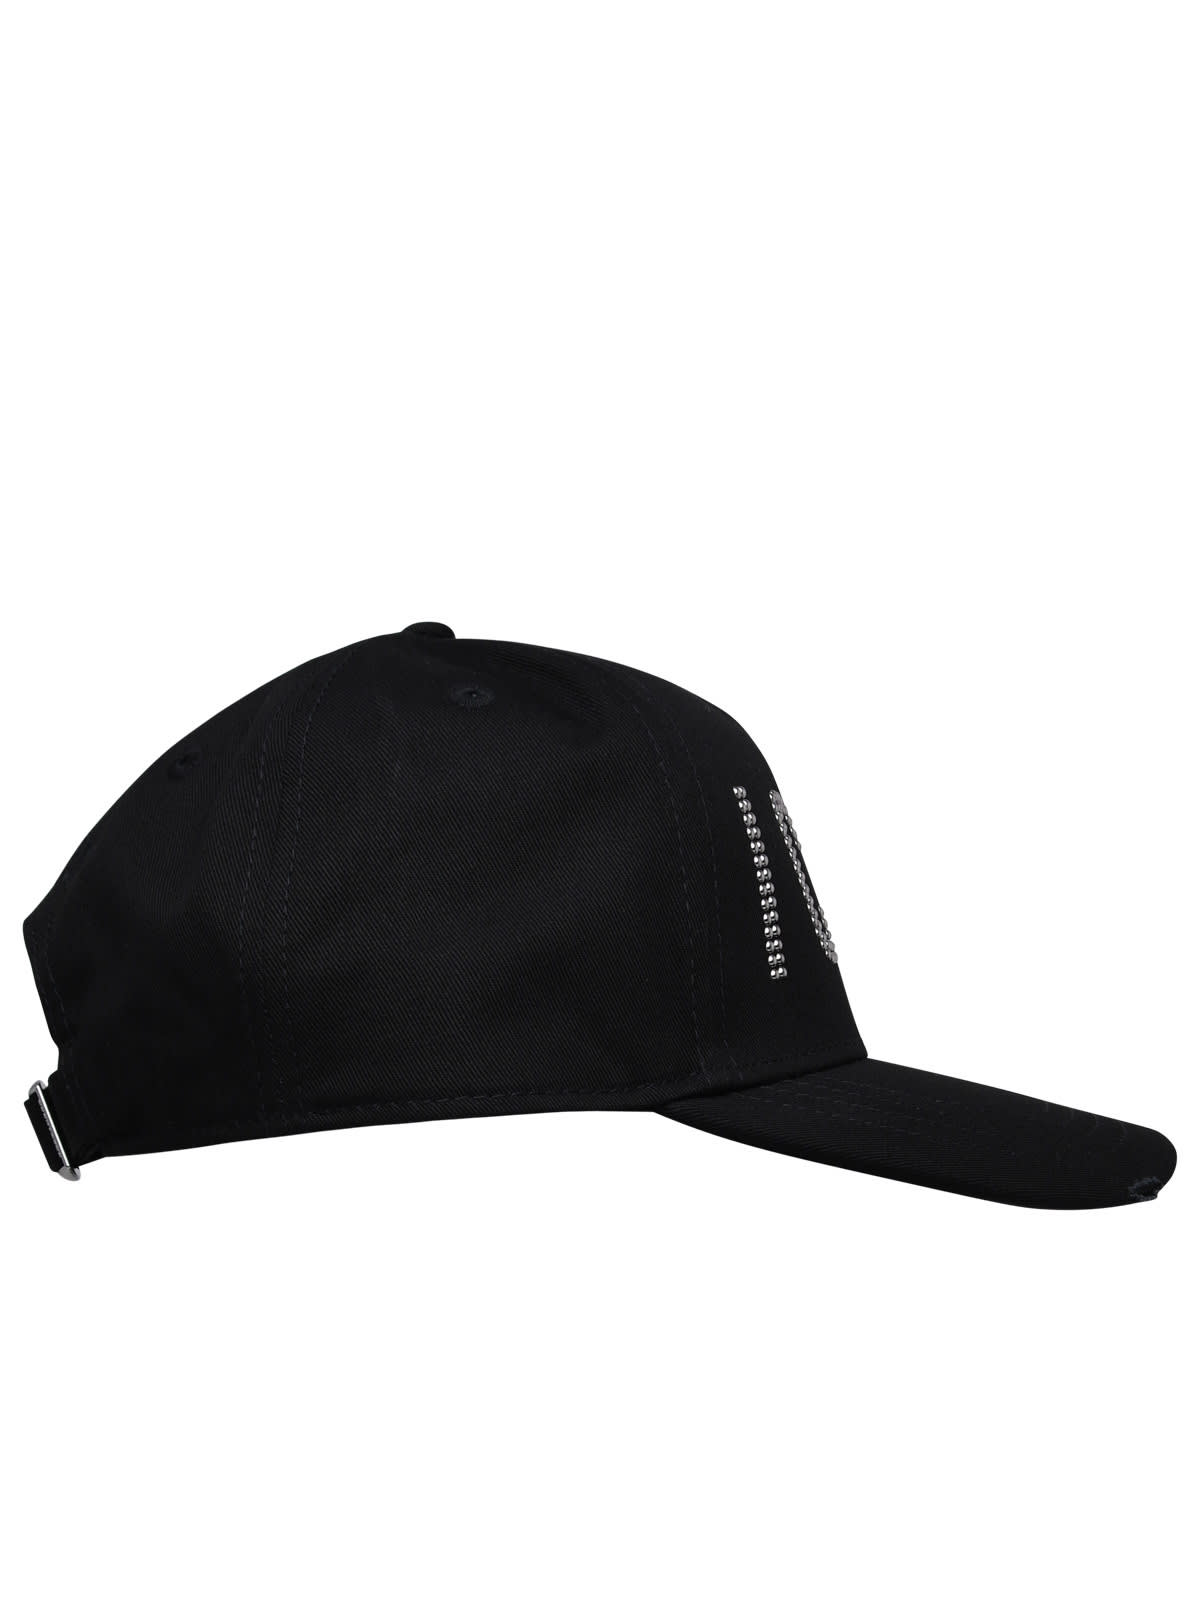 Shop Dsquared2 Black Cotton Cap